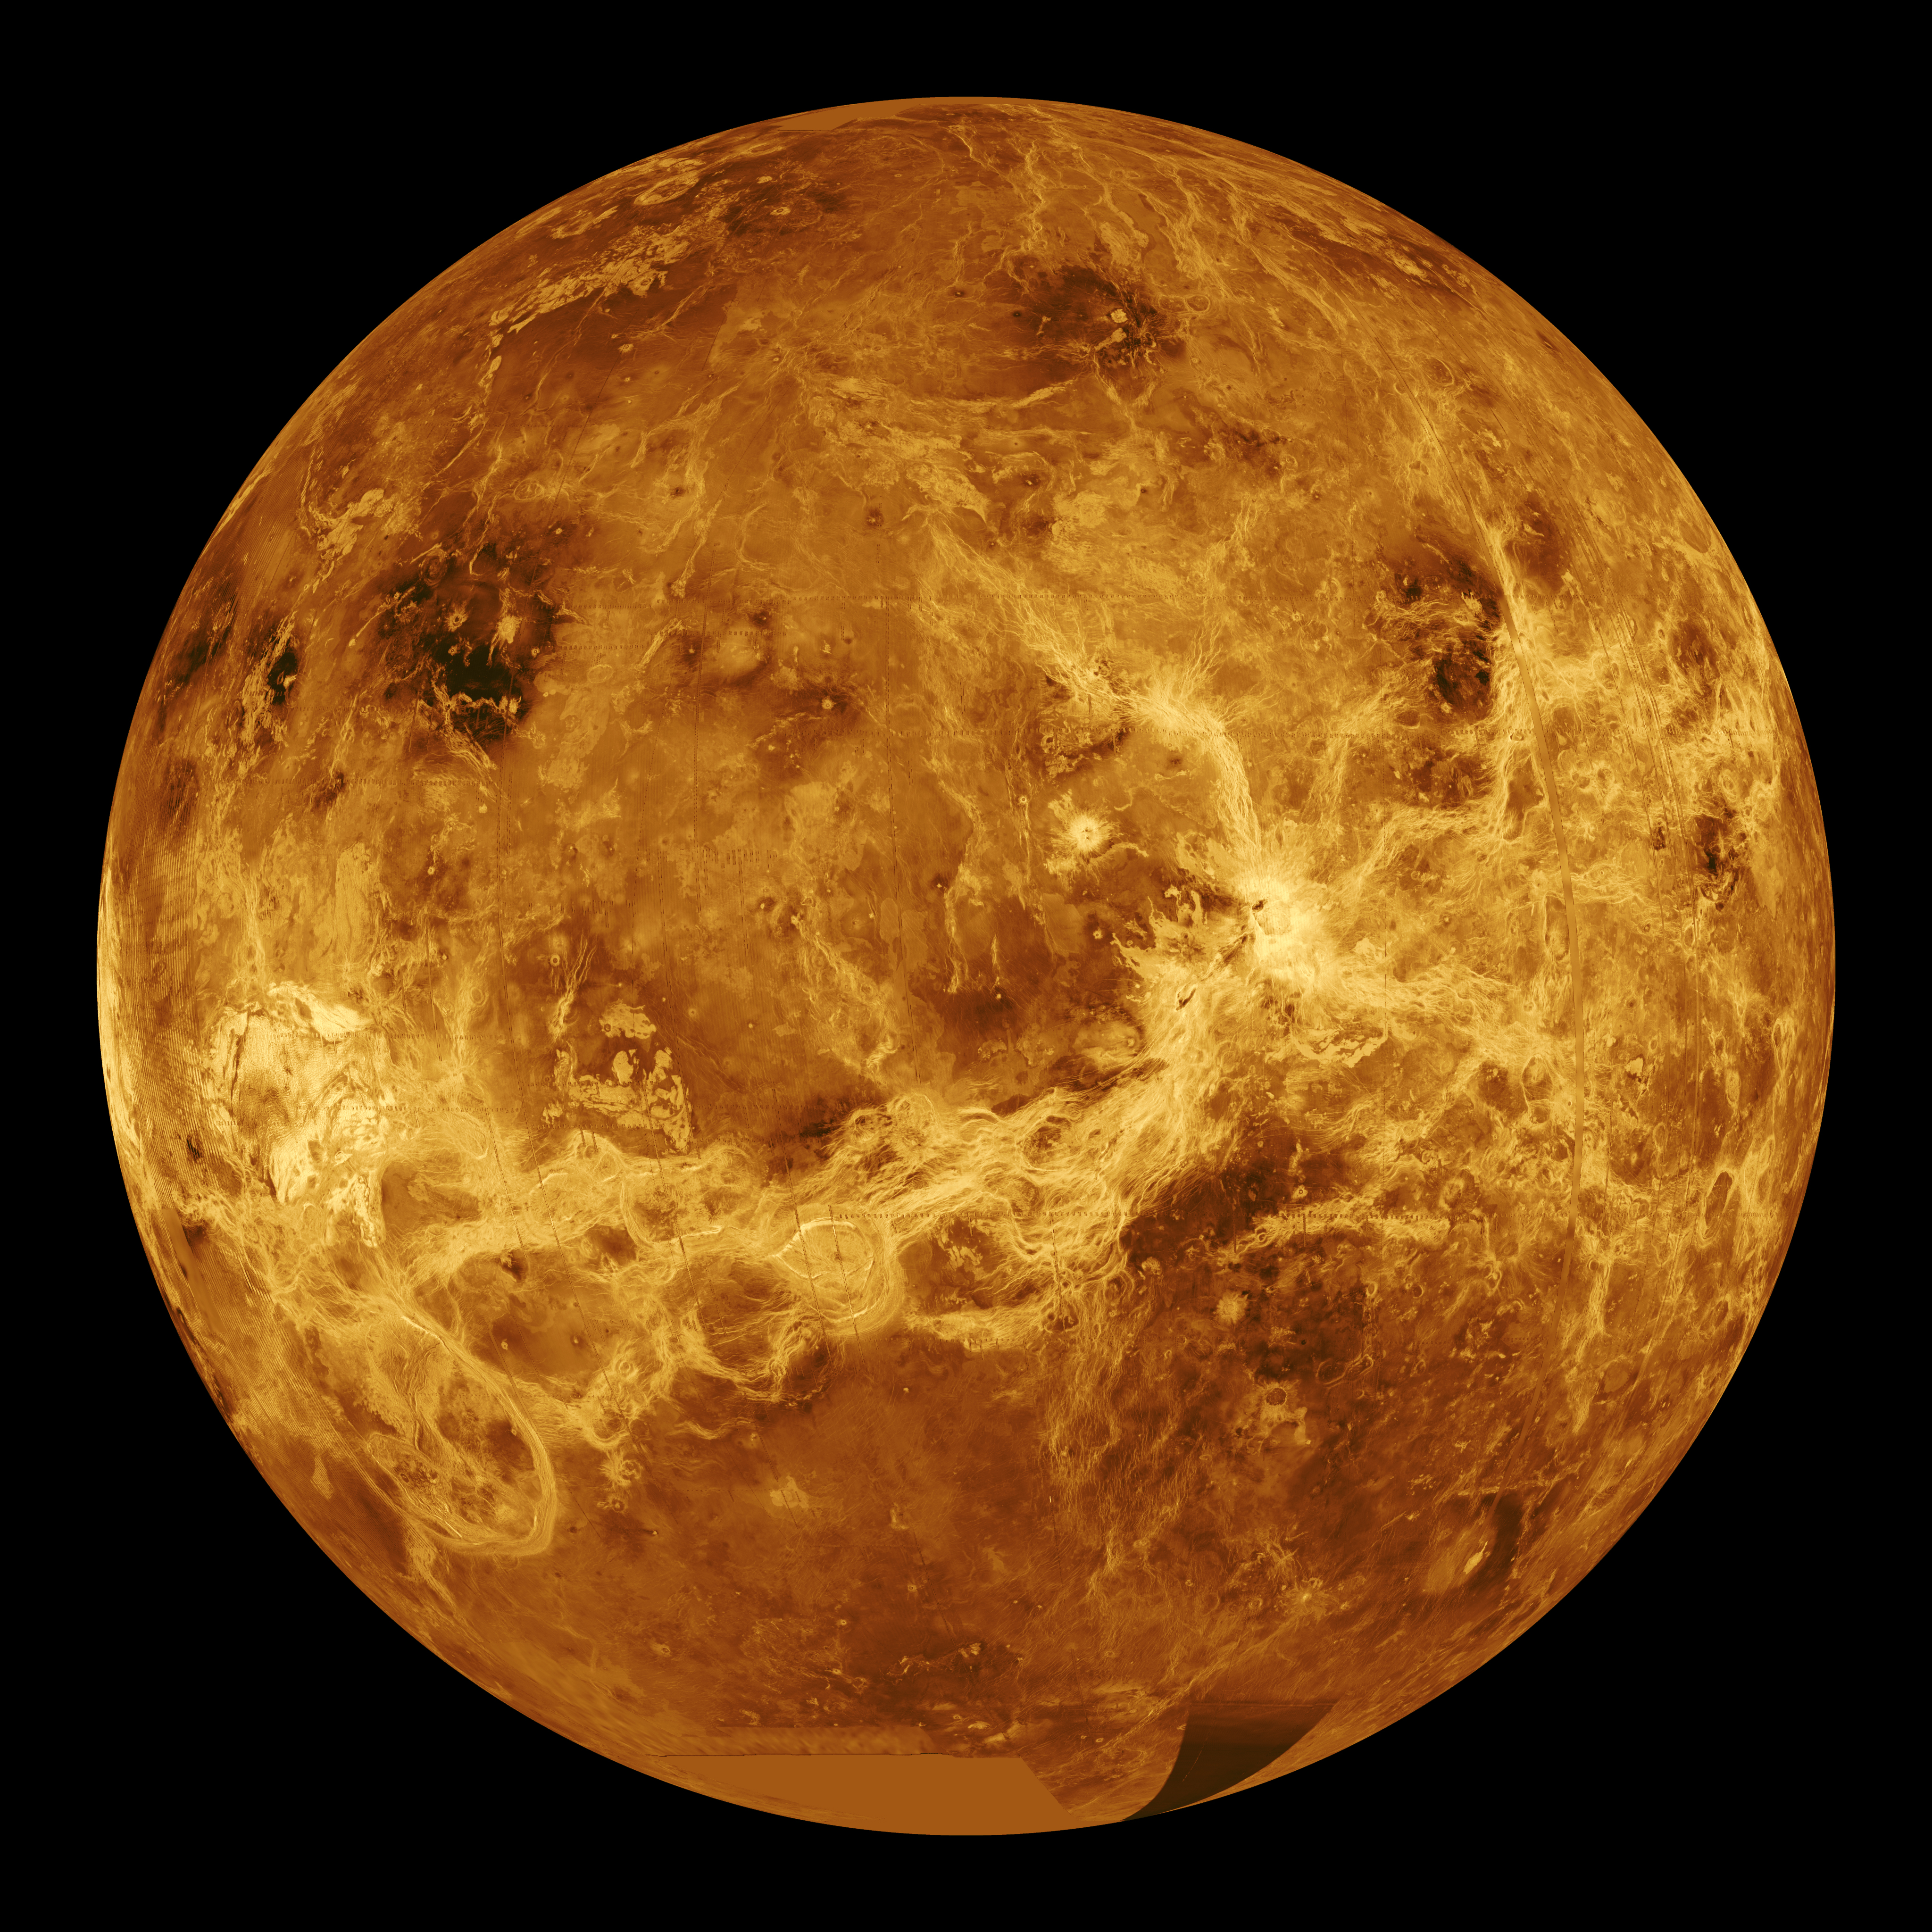 A look at the globe of Venus. Image courtesy of NASA/JPL